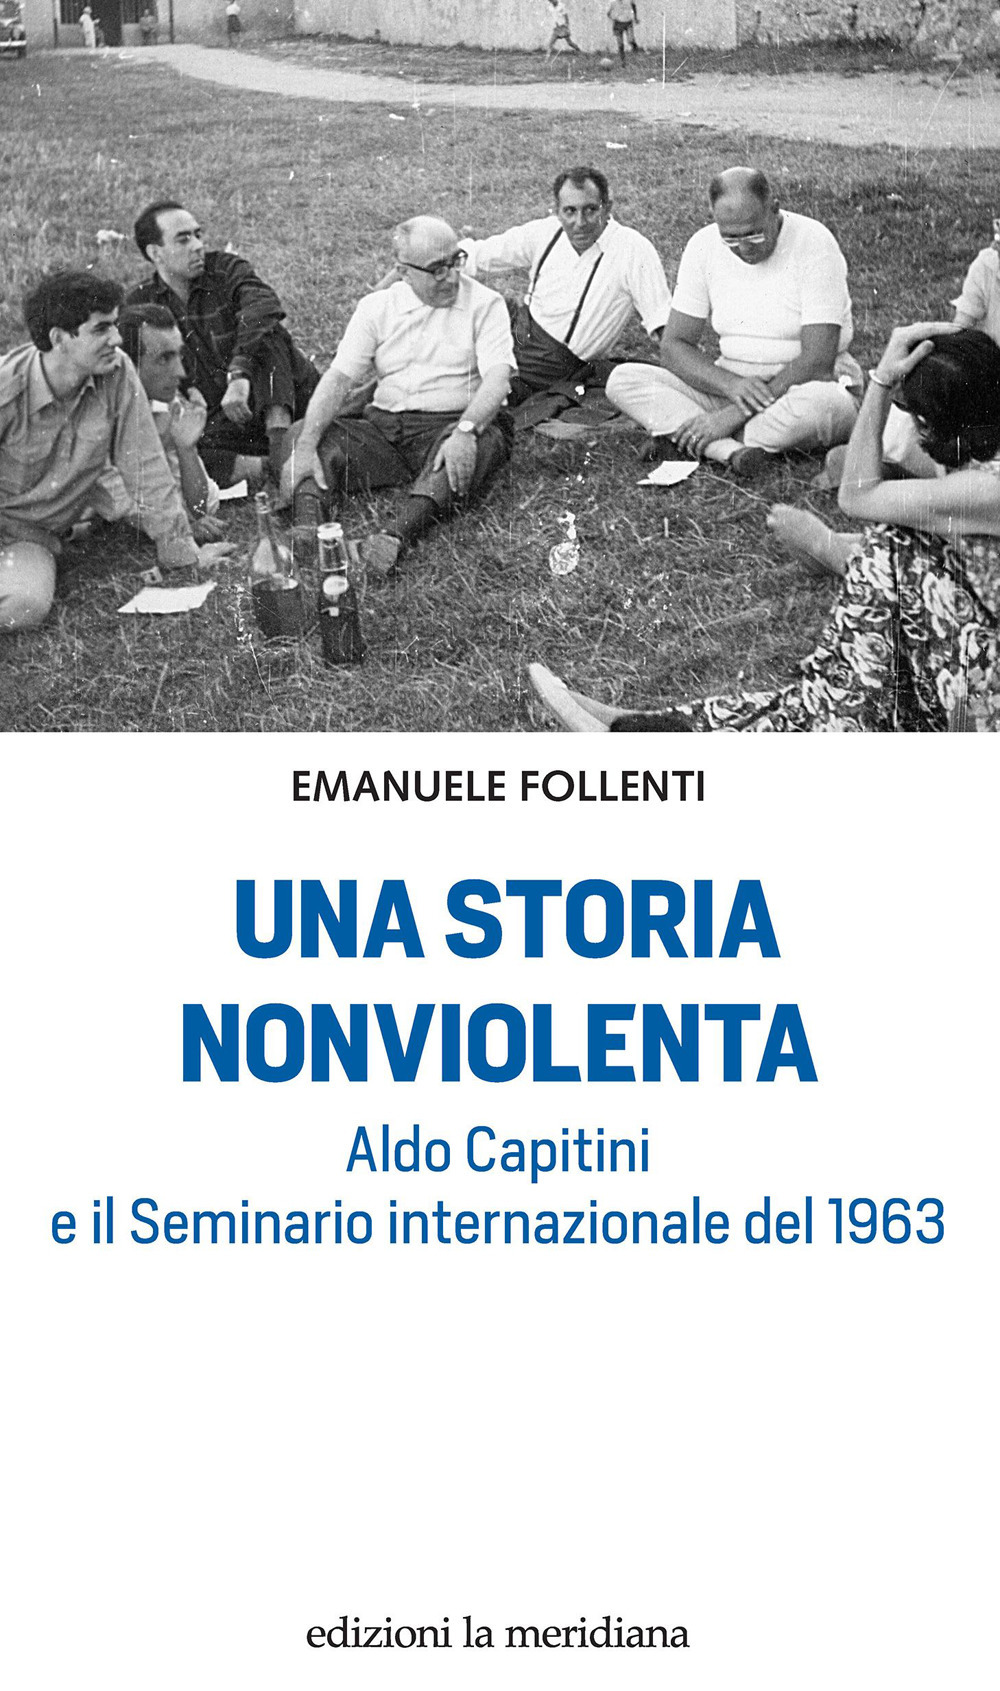 Una storia nonviolenta. Aldo Capitini e il Seminario internazionale del 1963